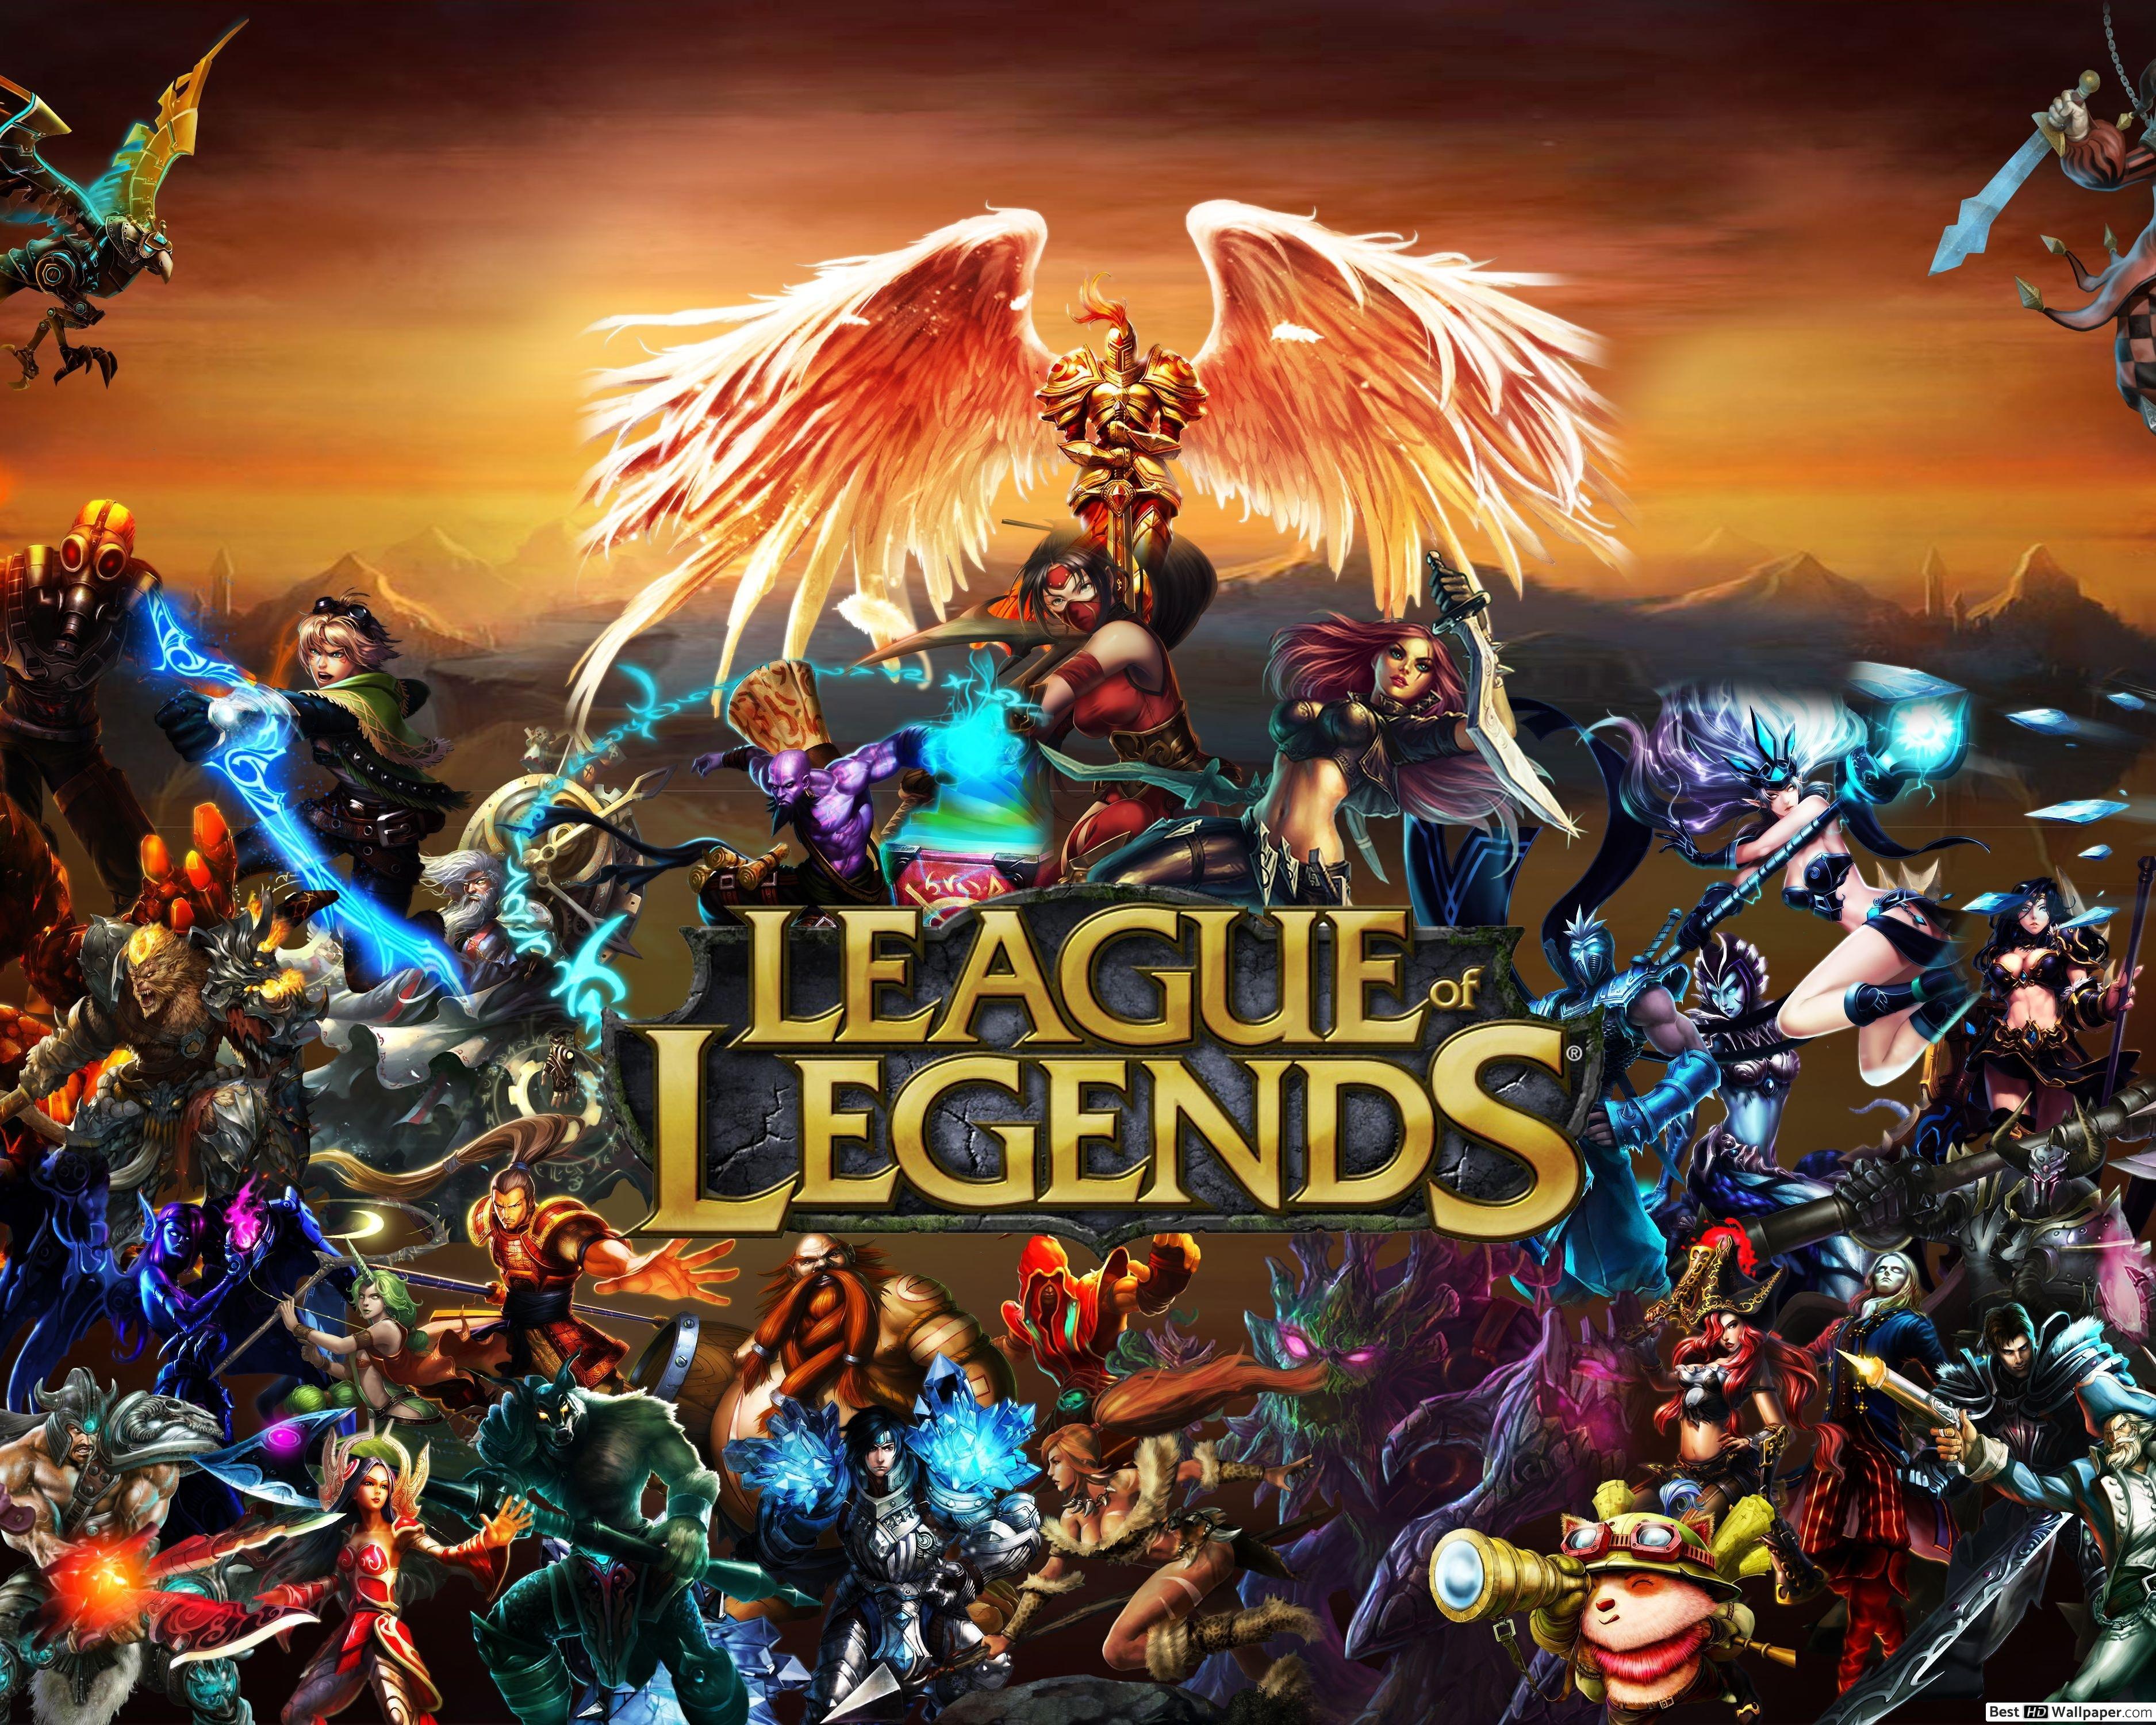 Игра легенд оф легенд. С днем рождения League of Legends. League of Legends игра. Лига легенд обои.